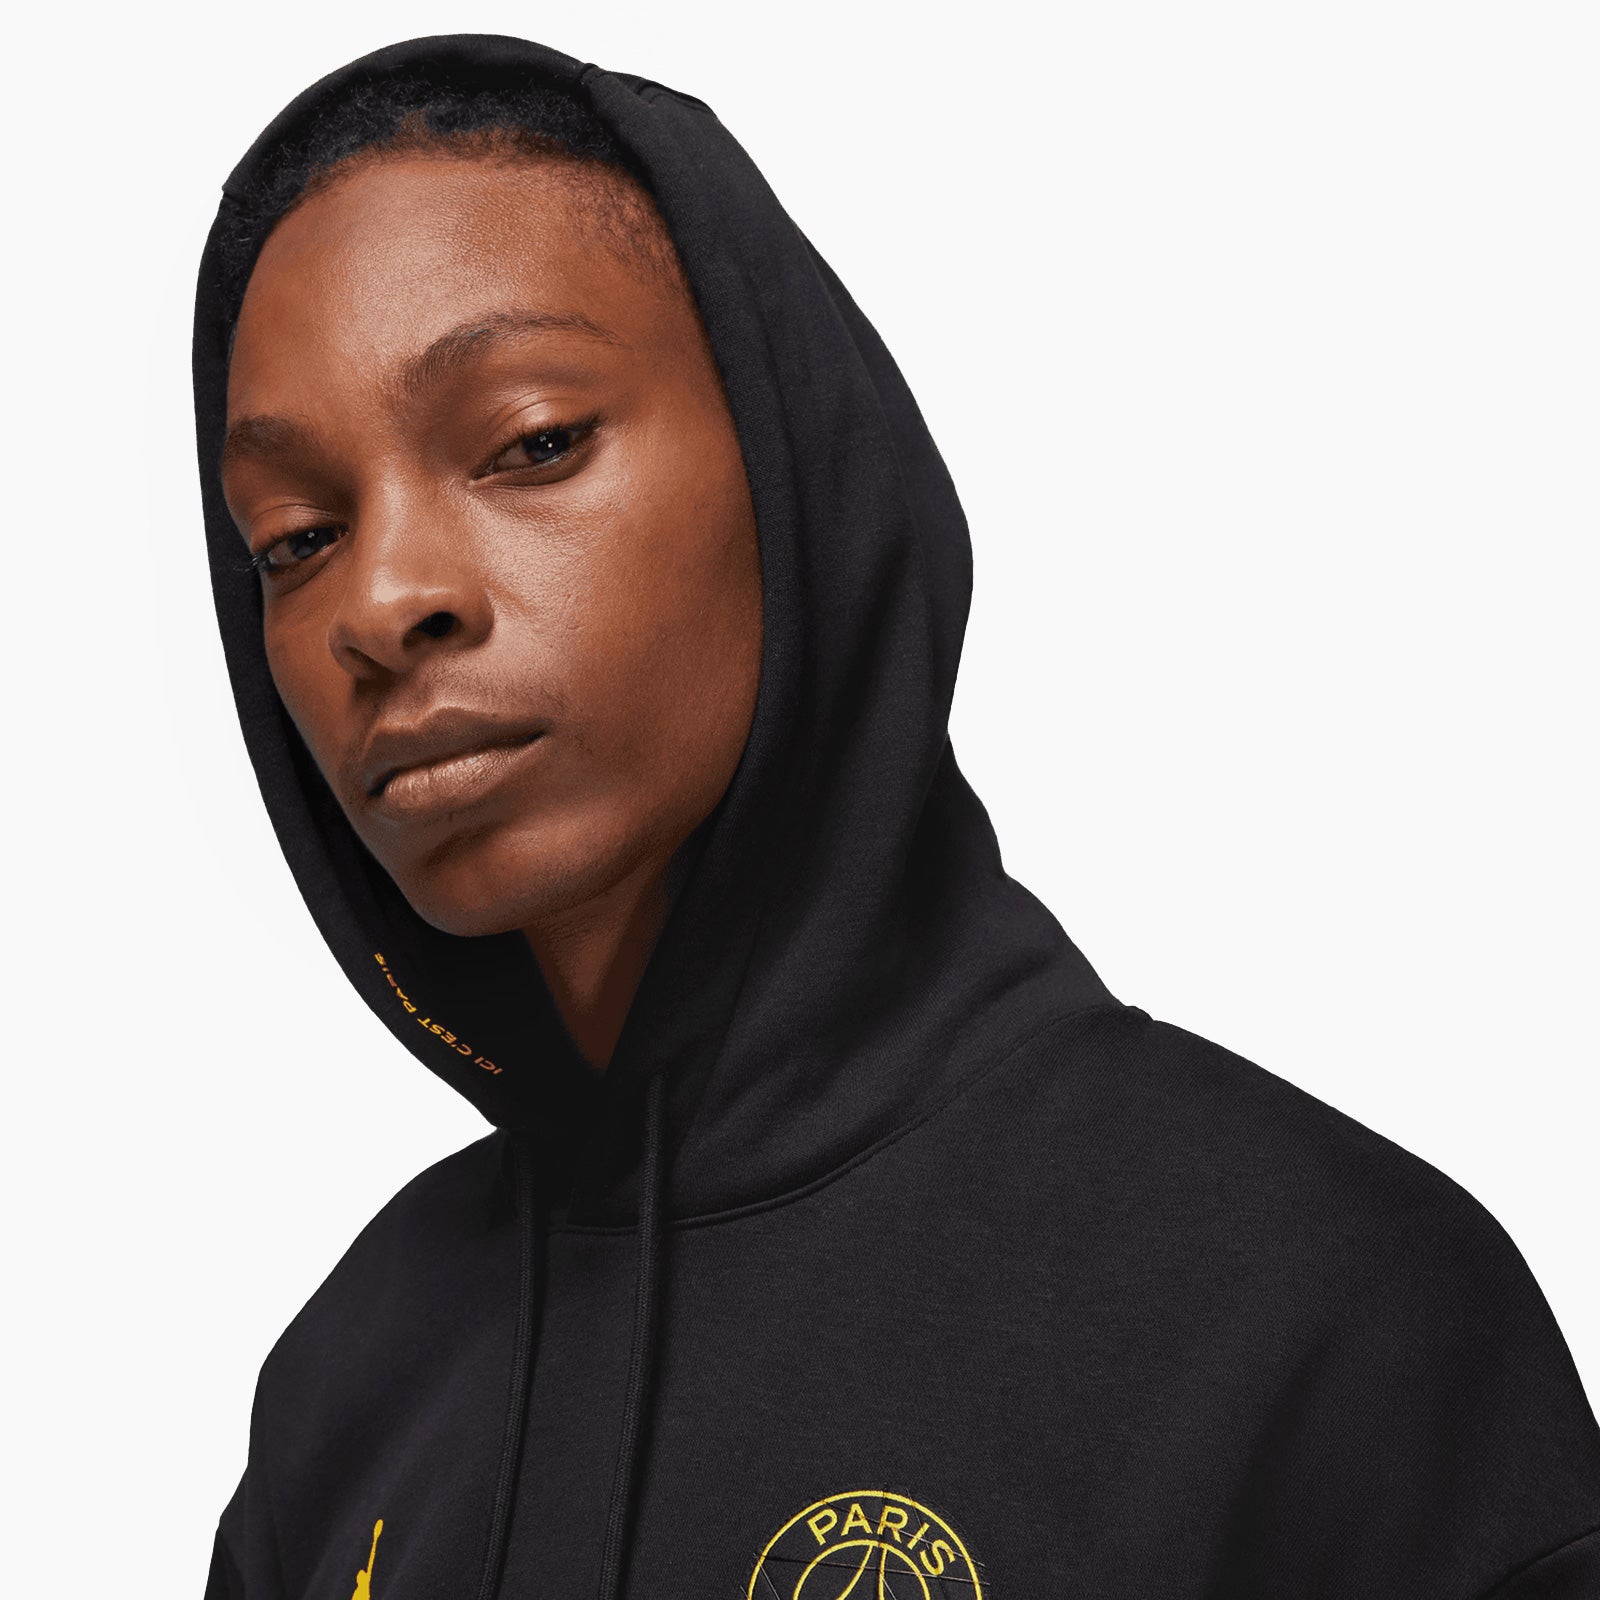 black jordan paris hoodie